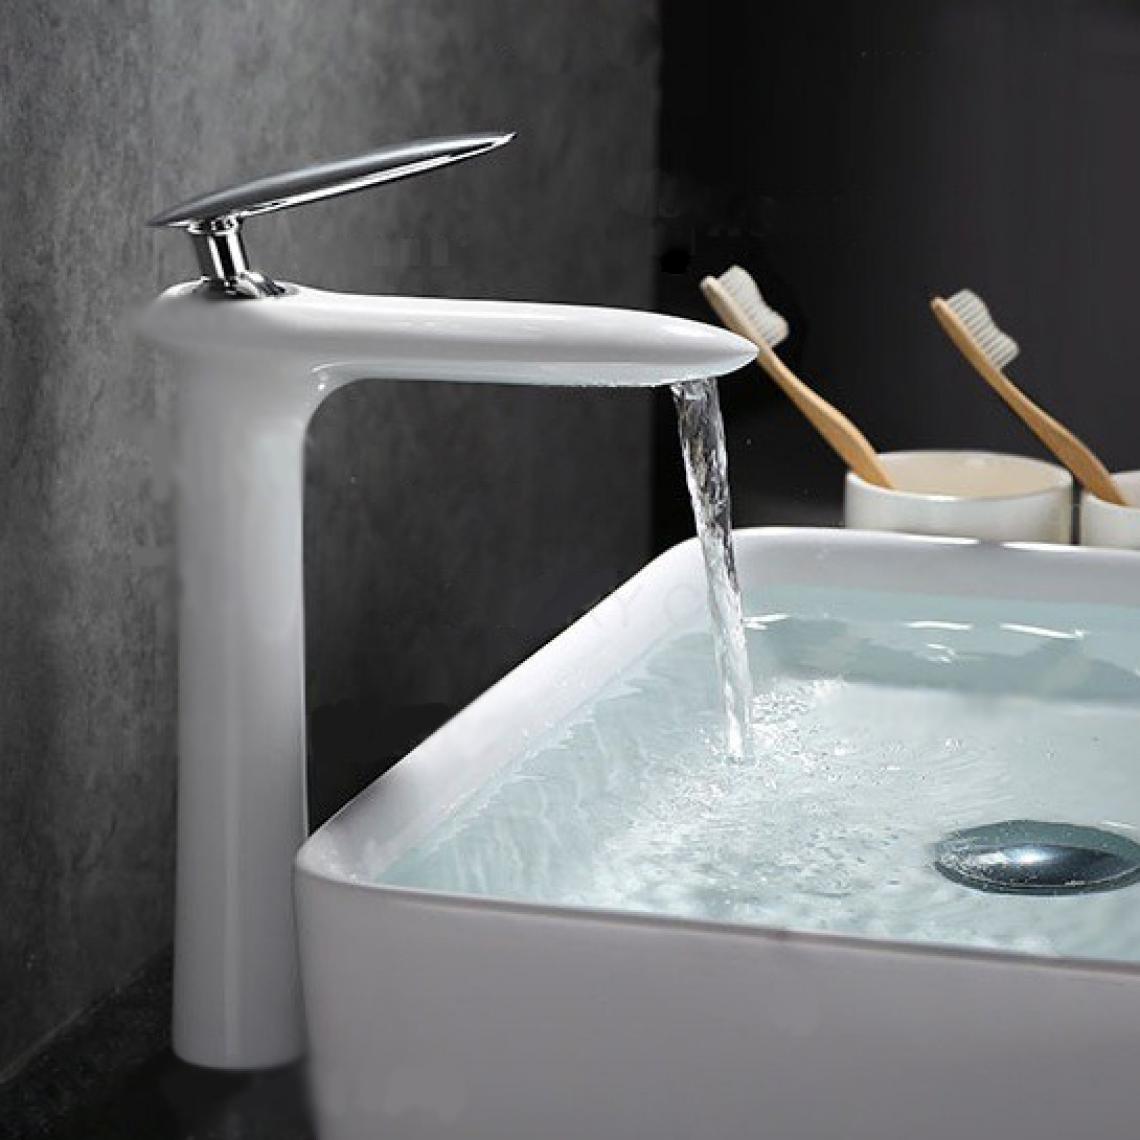 Kroos - Robinet lavabo mitigeur moderne en blanc - Robinet de lavabo